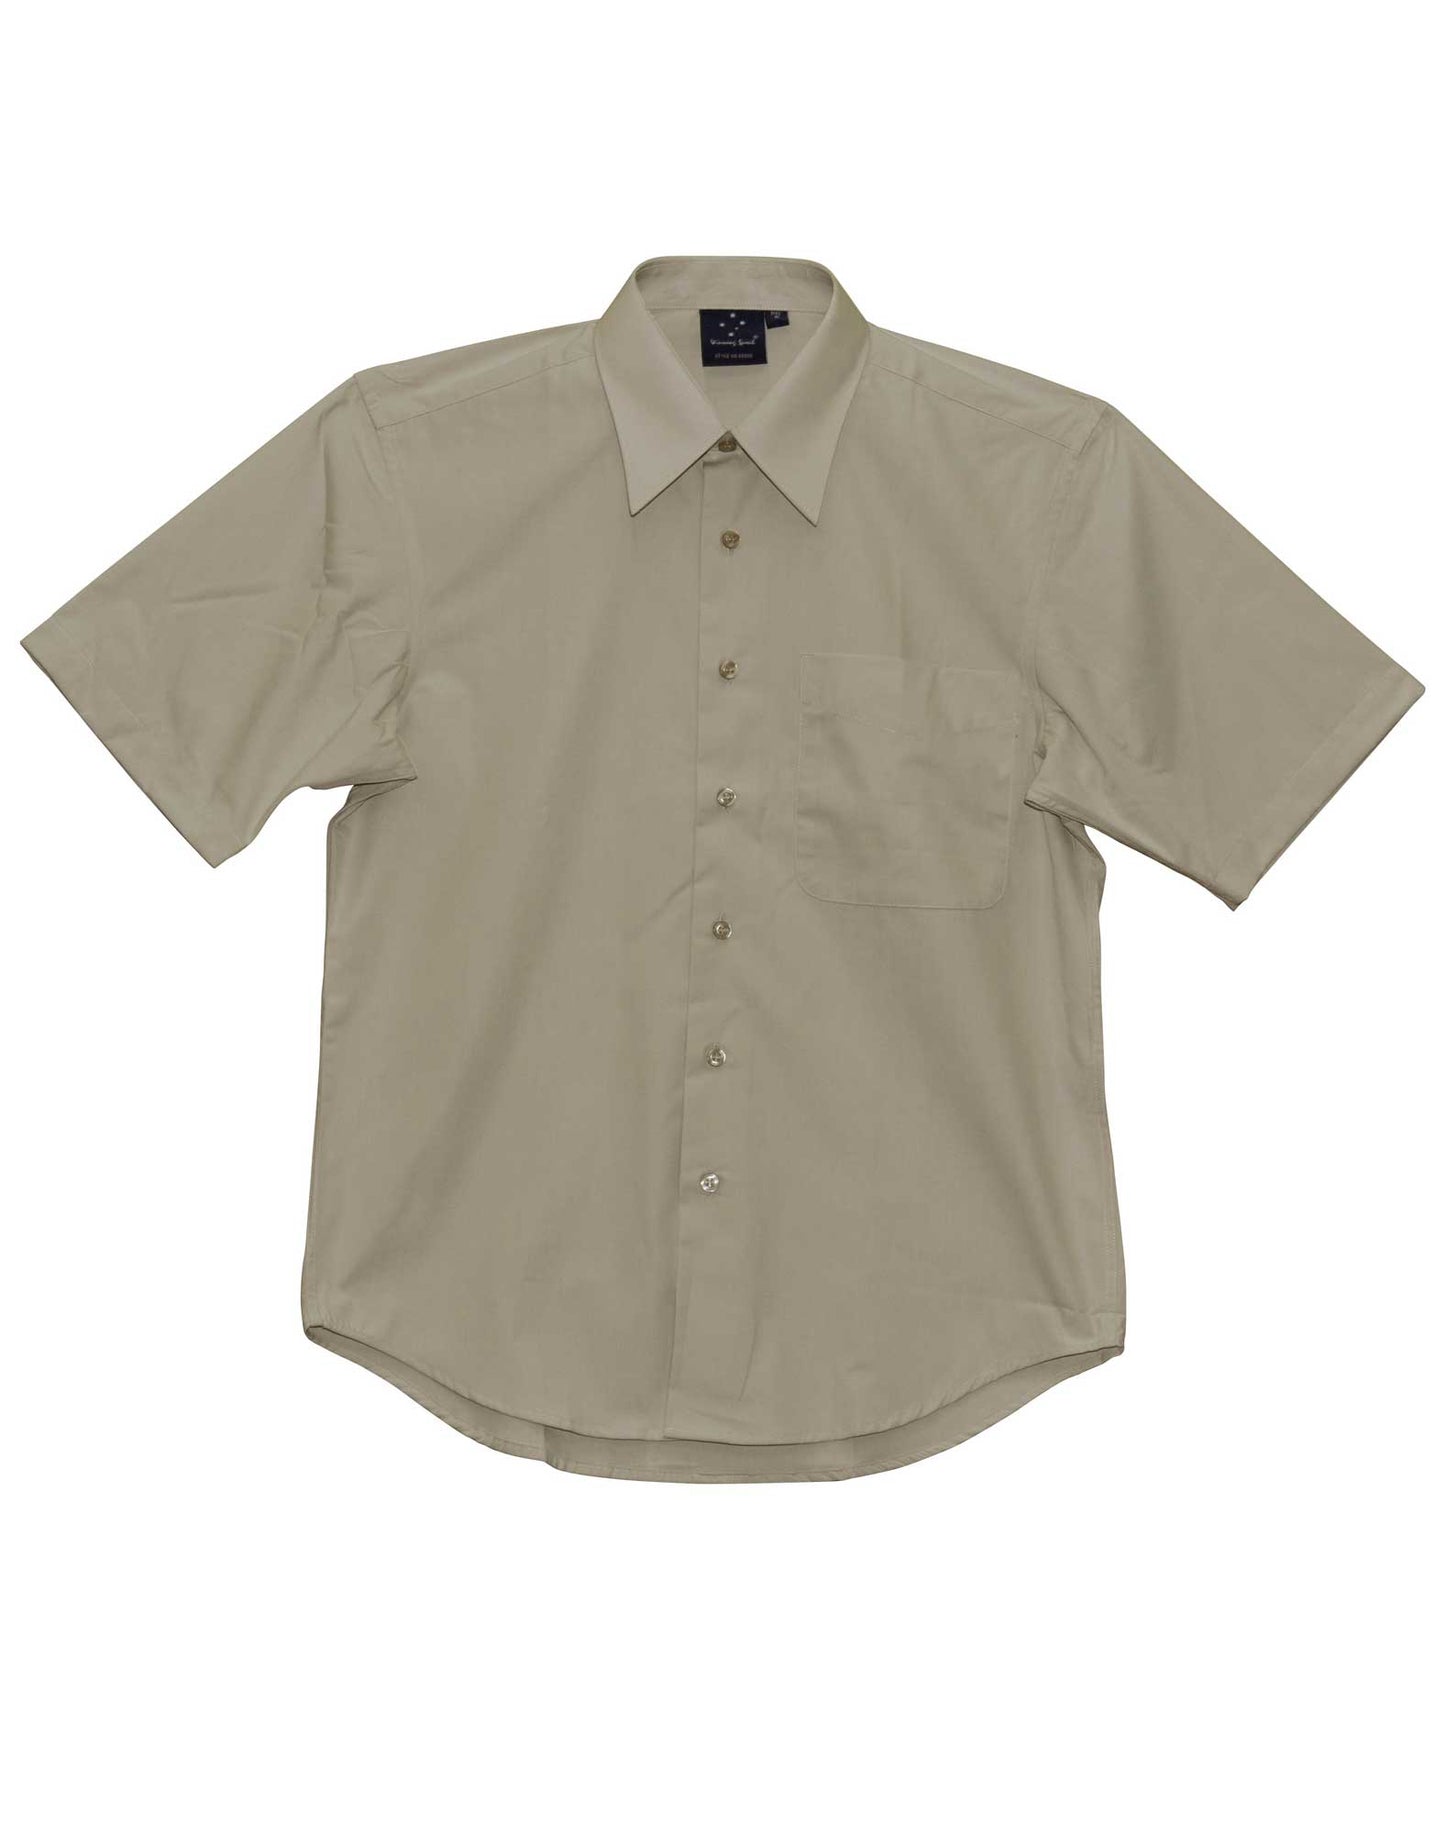 Winning Spirit- Men's Teflon Executive Short Sleeve Shirt -BS08S